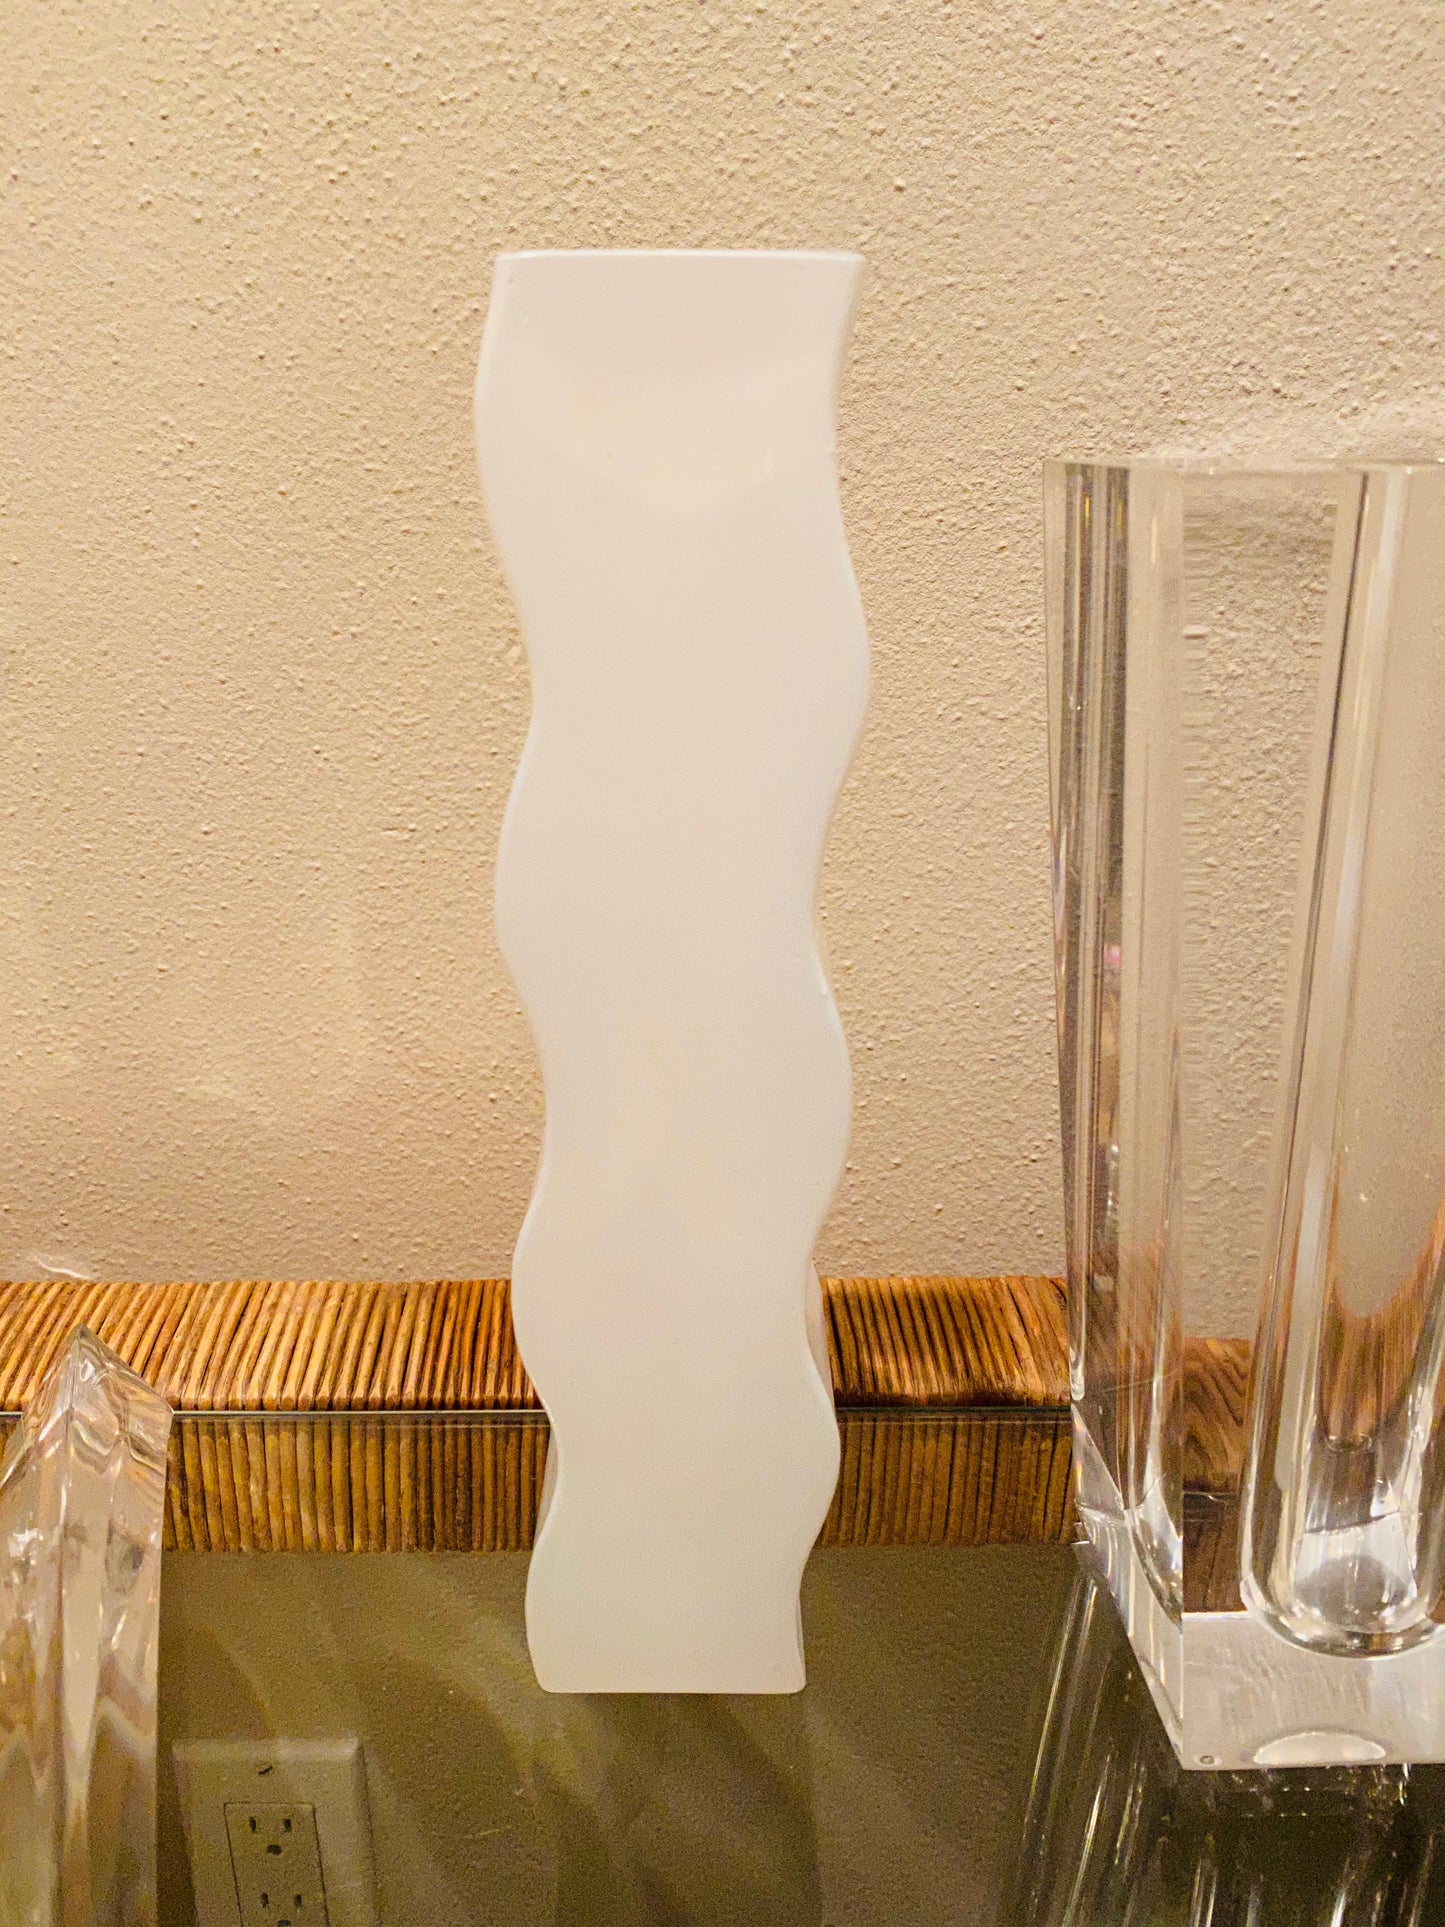 Wavy White Vase